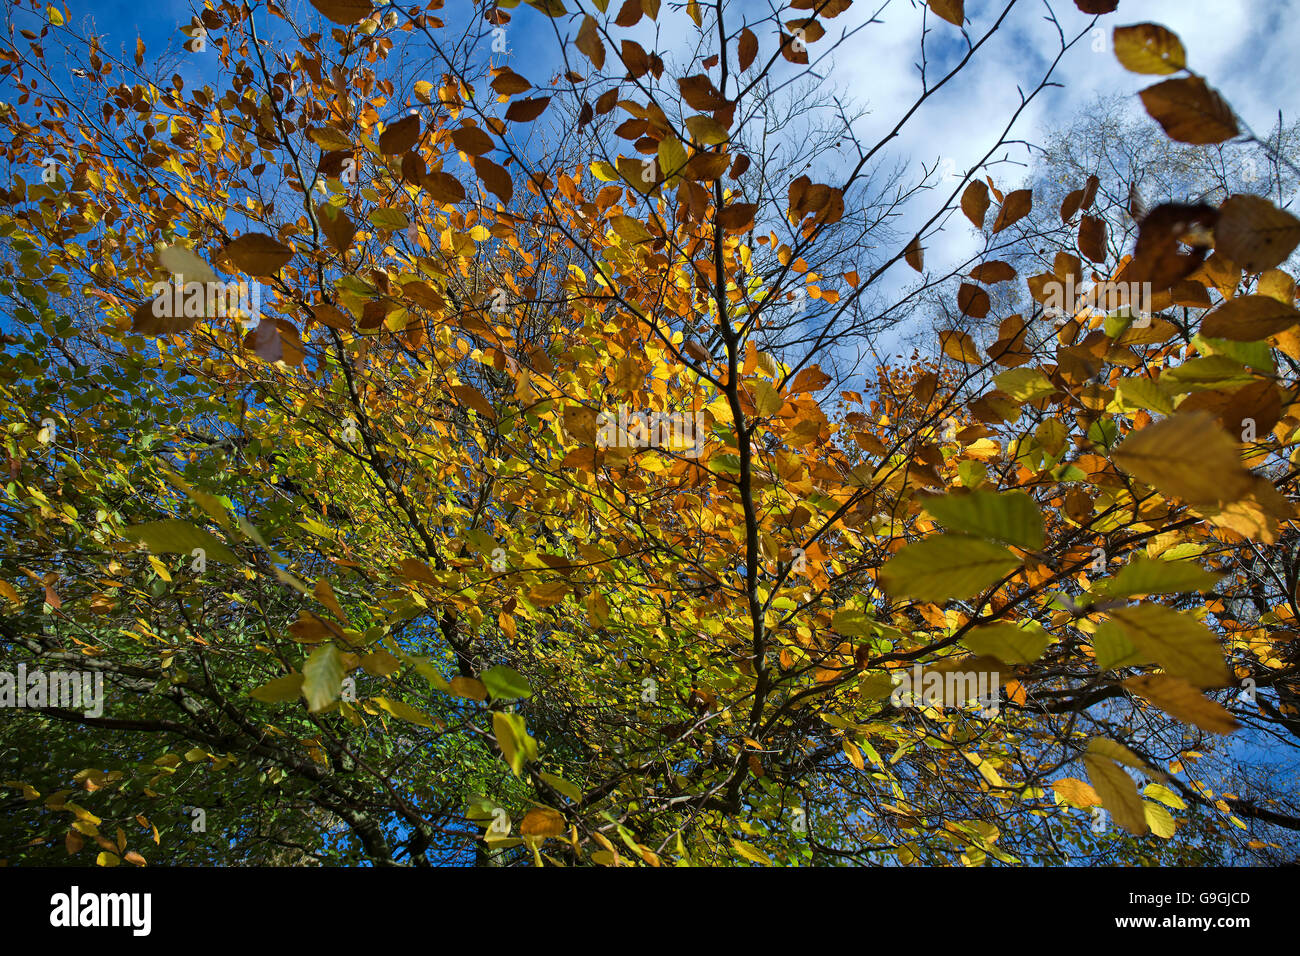 Atemberaubende herbstliche Farben und Tönungen aus dem Buche gesetzt Aginst einen lebendigeren blauen Himmel im Herbst. Stockfoto